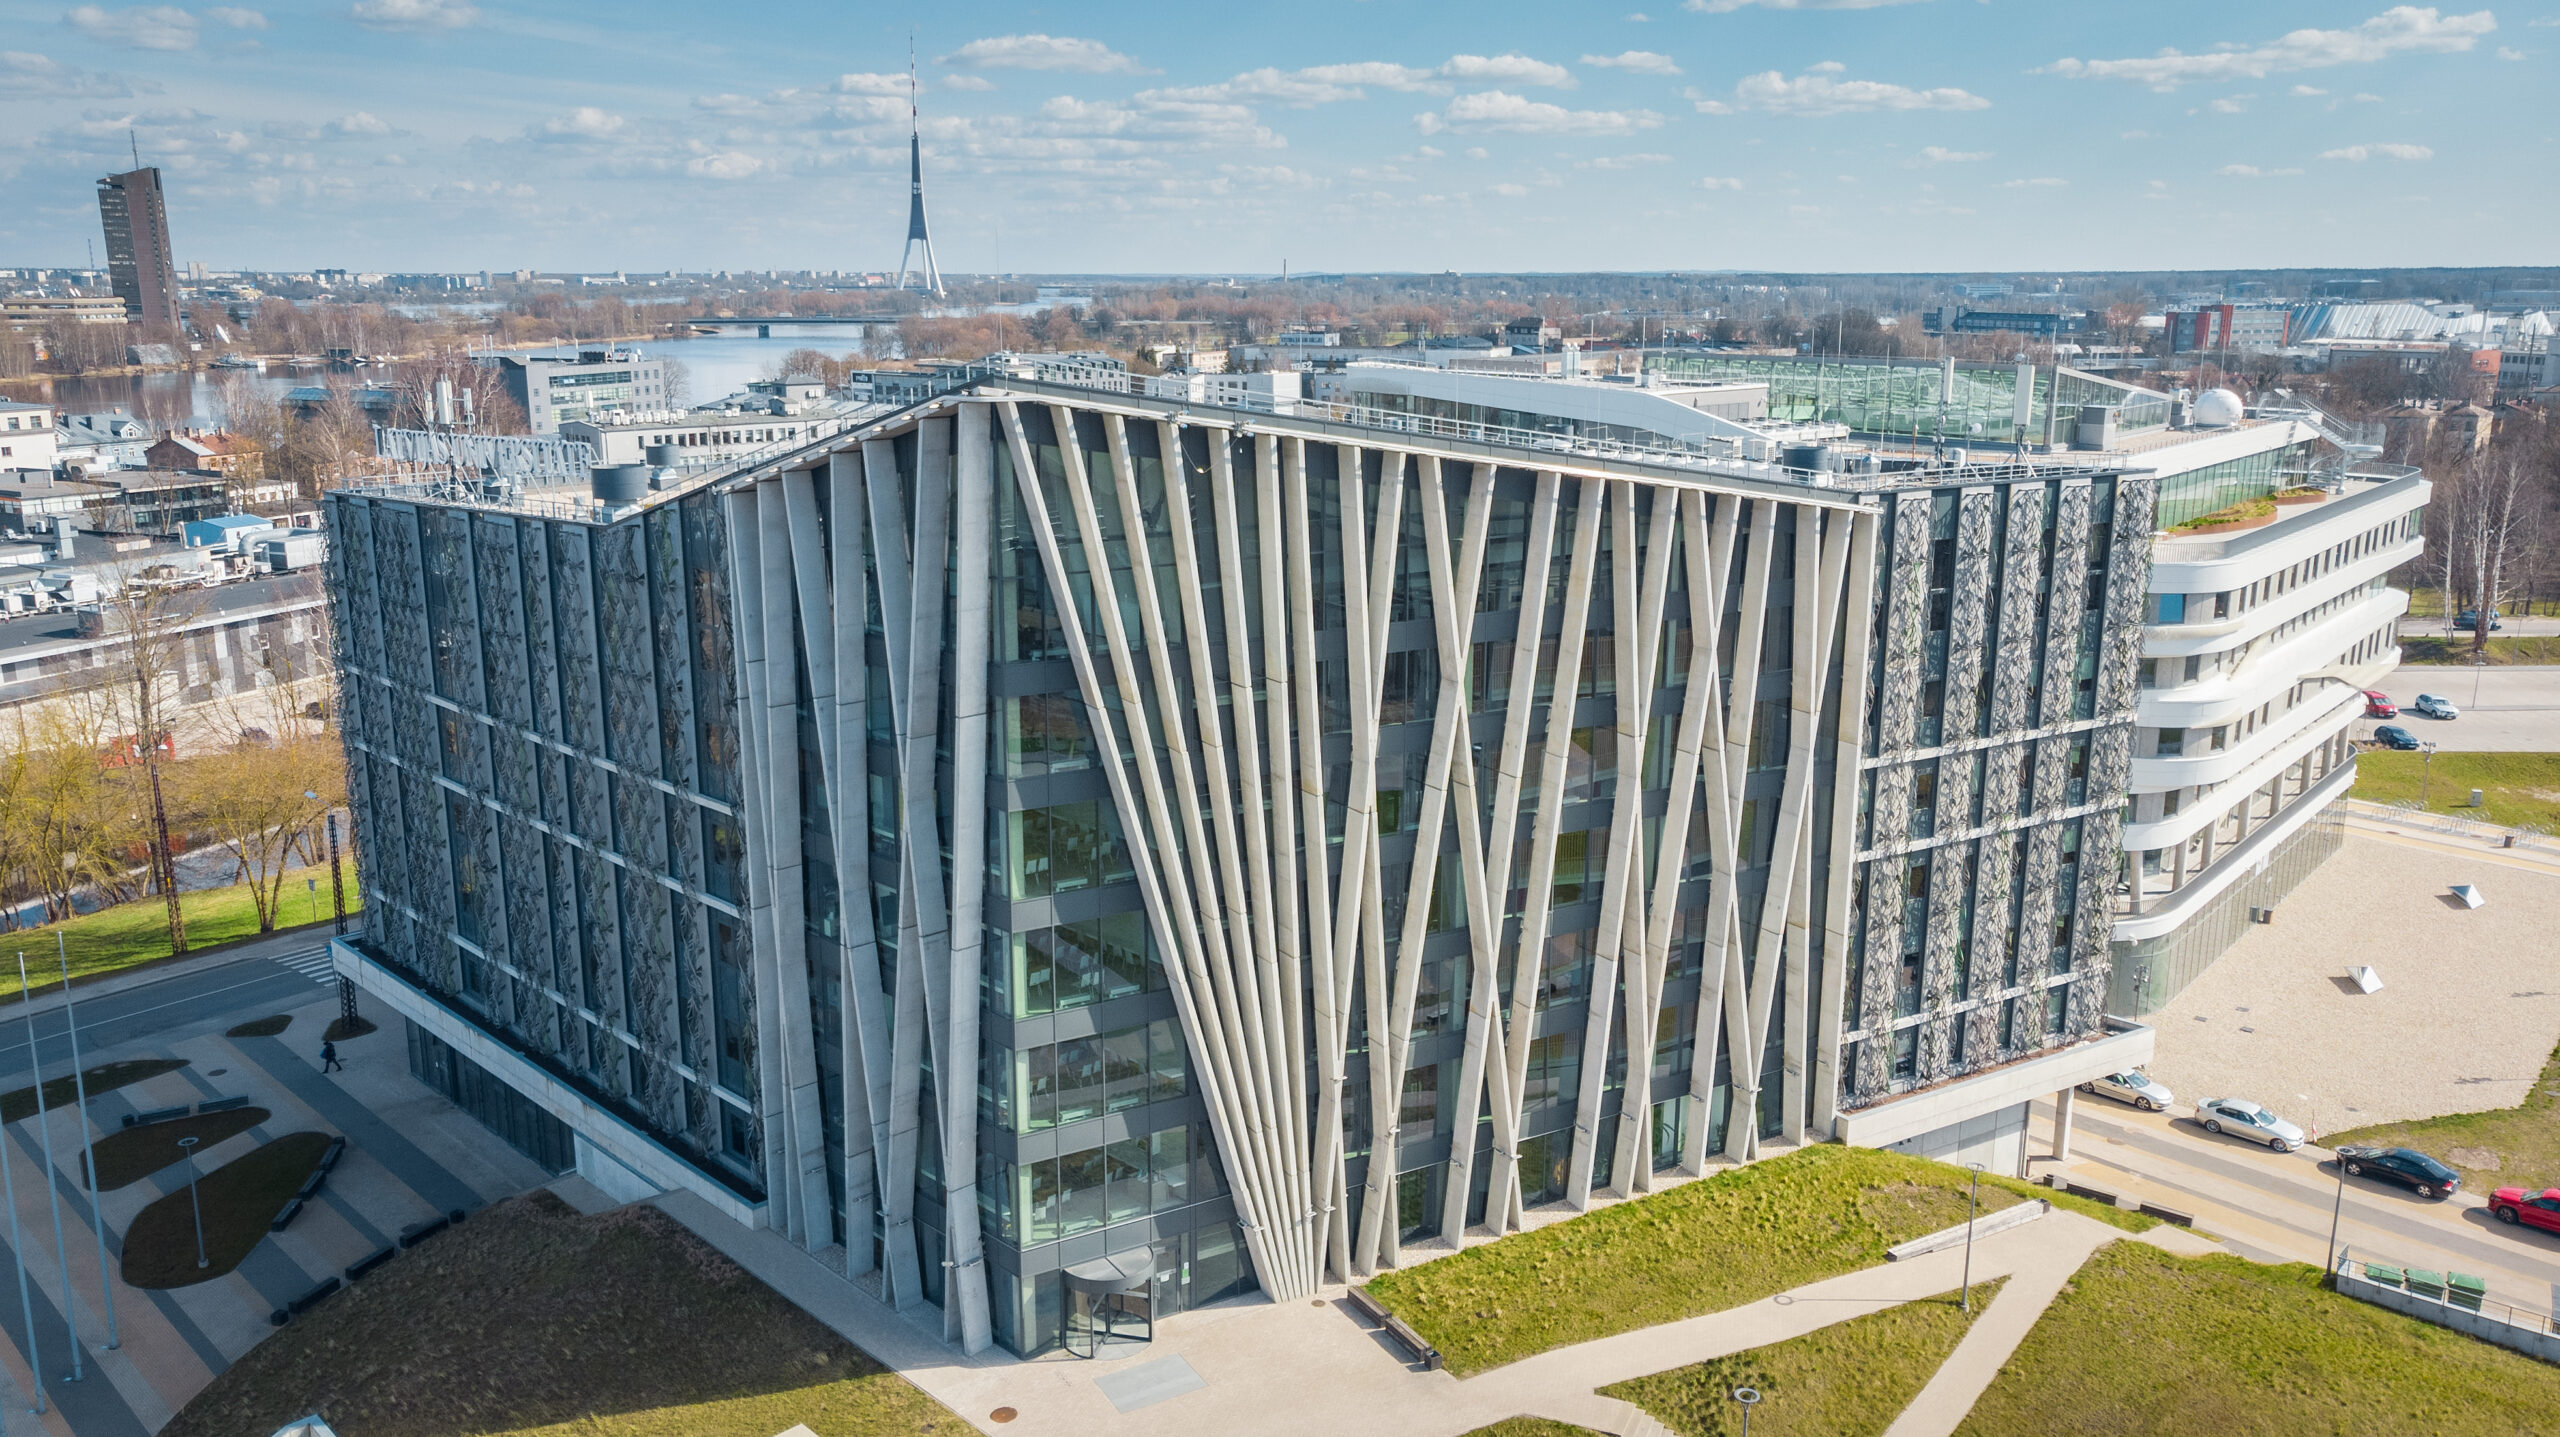 University of Latvia Find and Study 10 scaled - جامعة لاتفيا